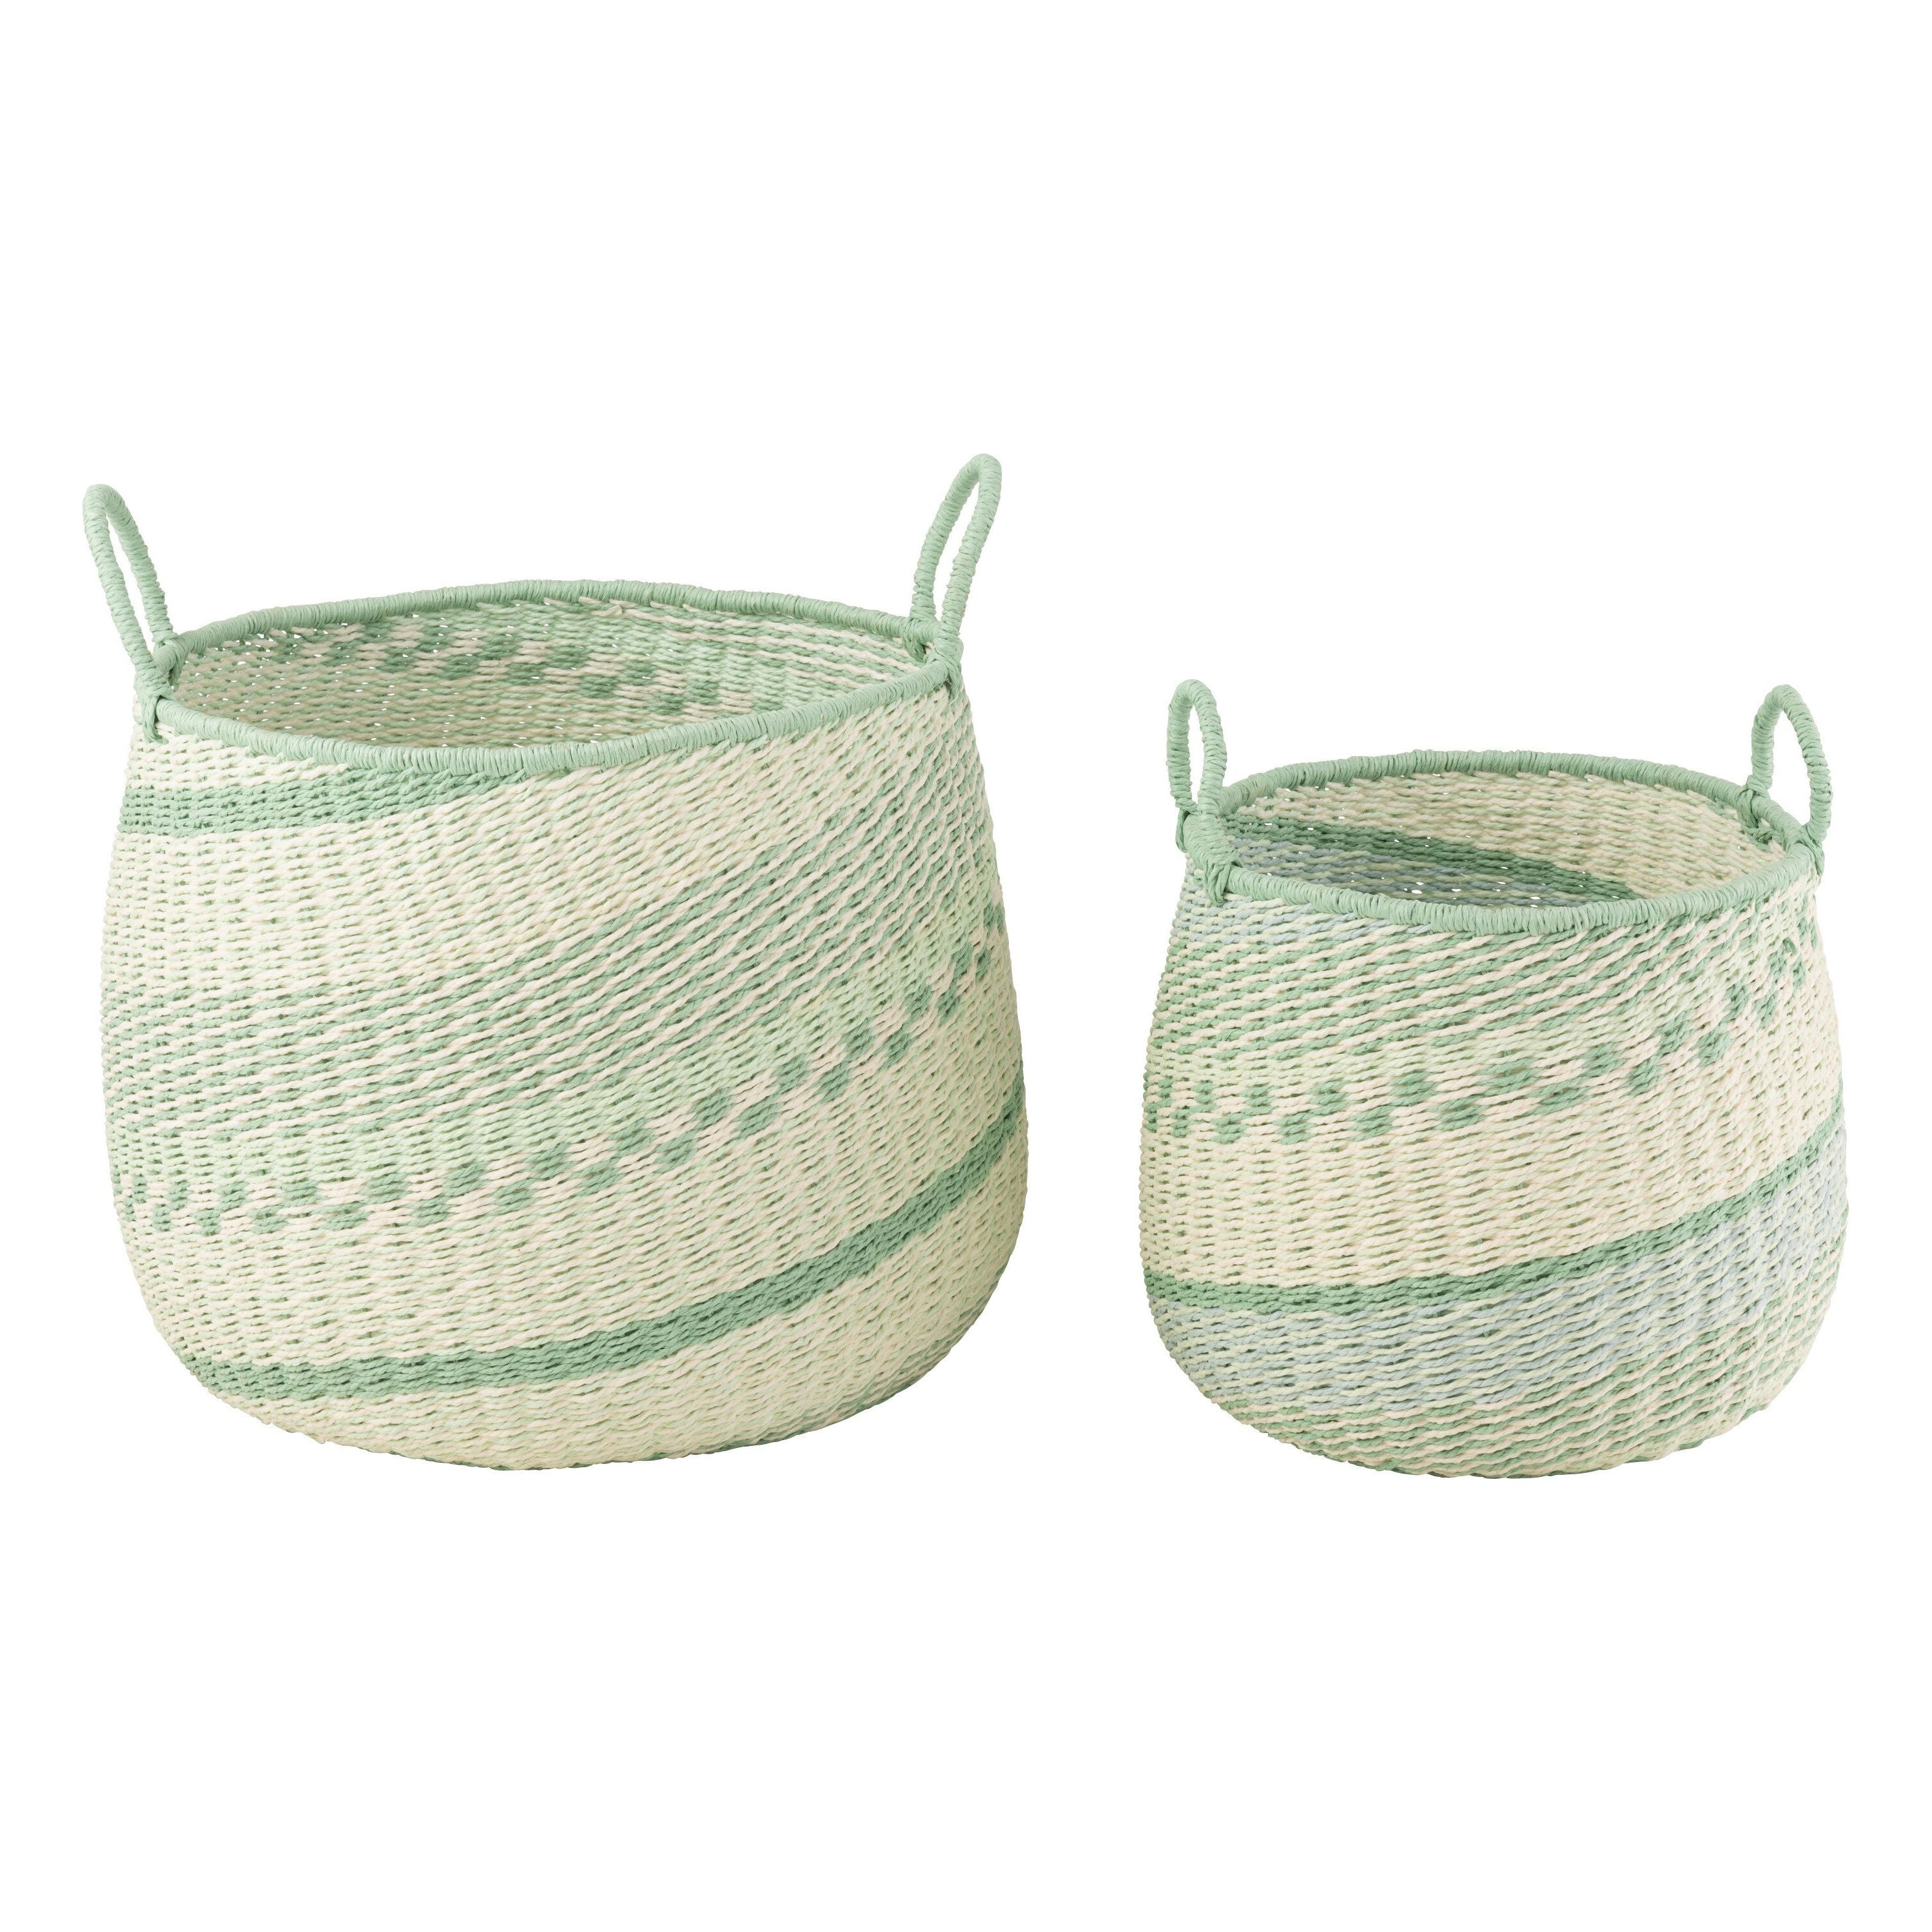 Basket + handles Seagrass Beige/green